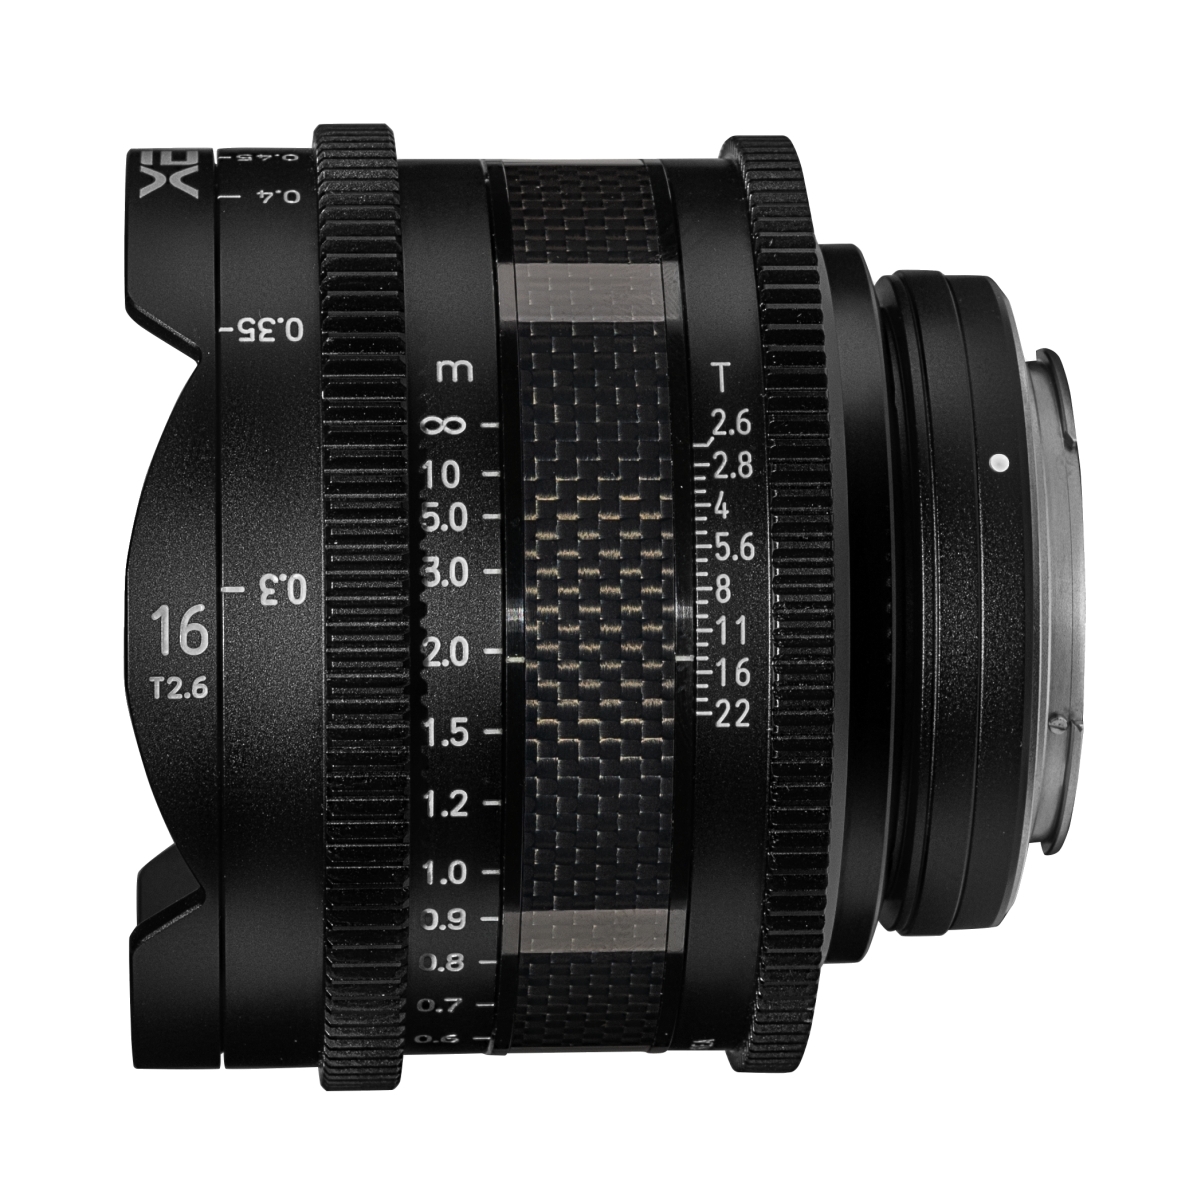 XEEN CF Cinema 16mm T2.6 Canon EF full frame